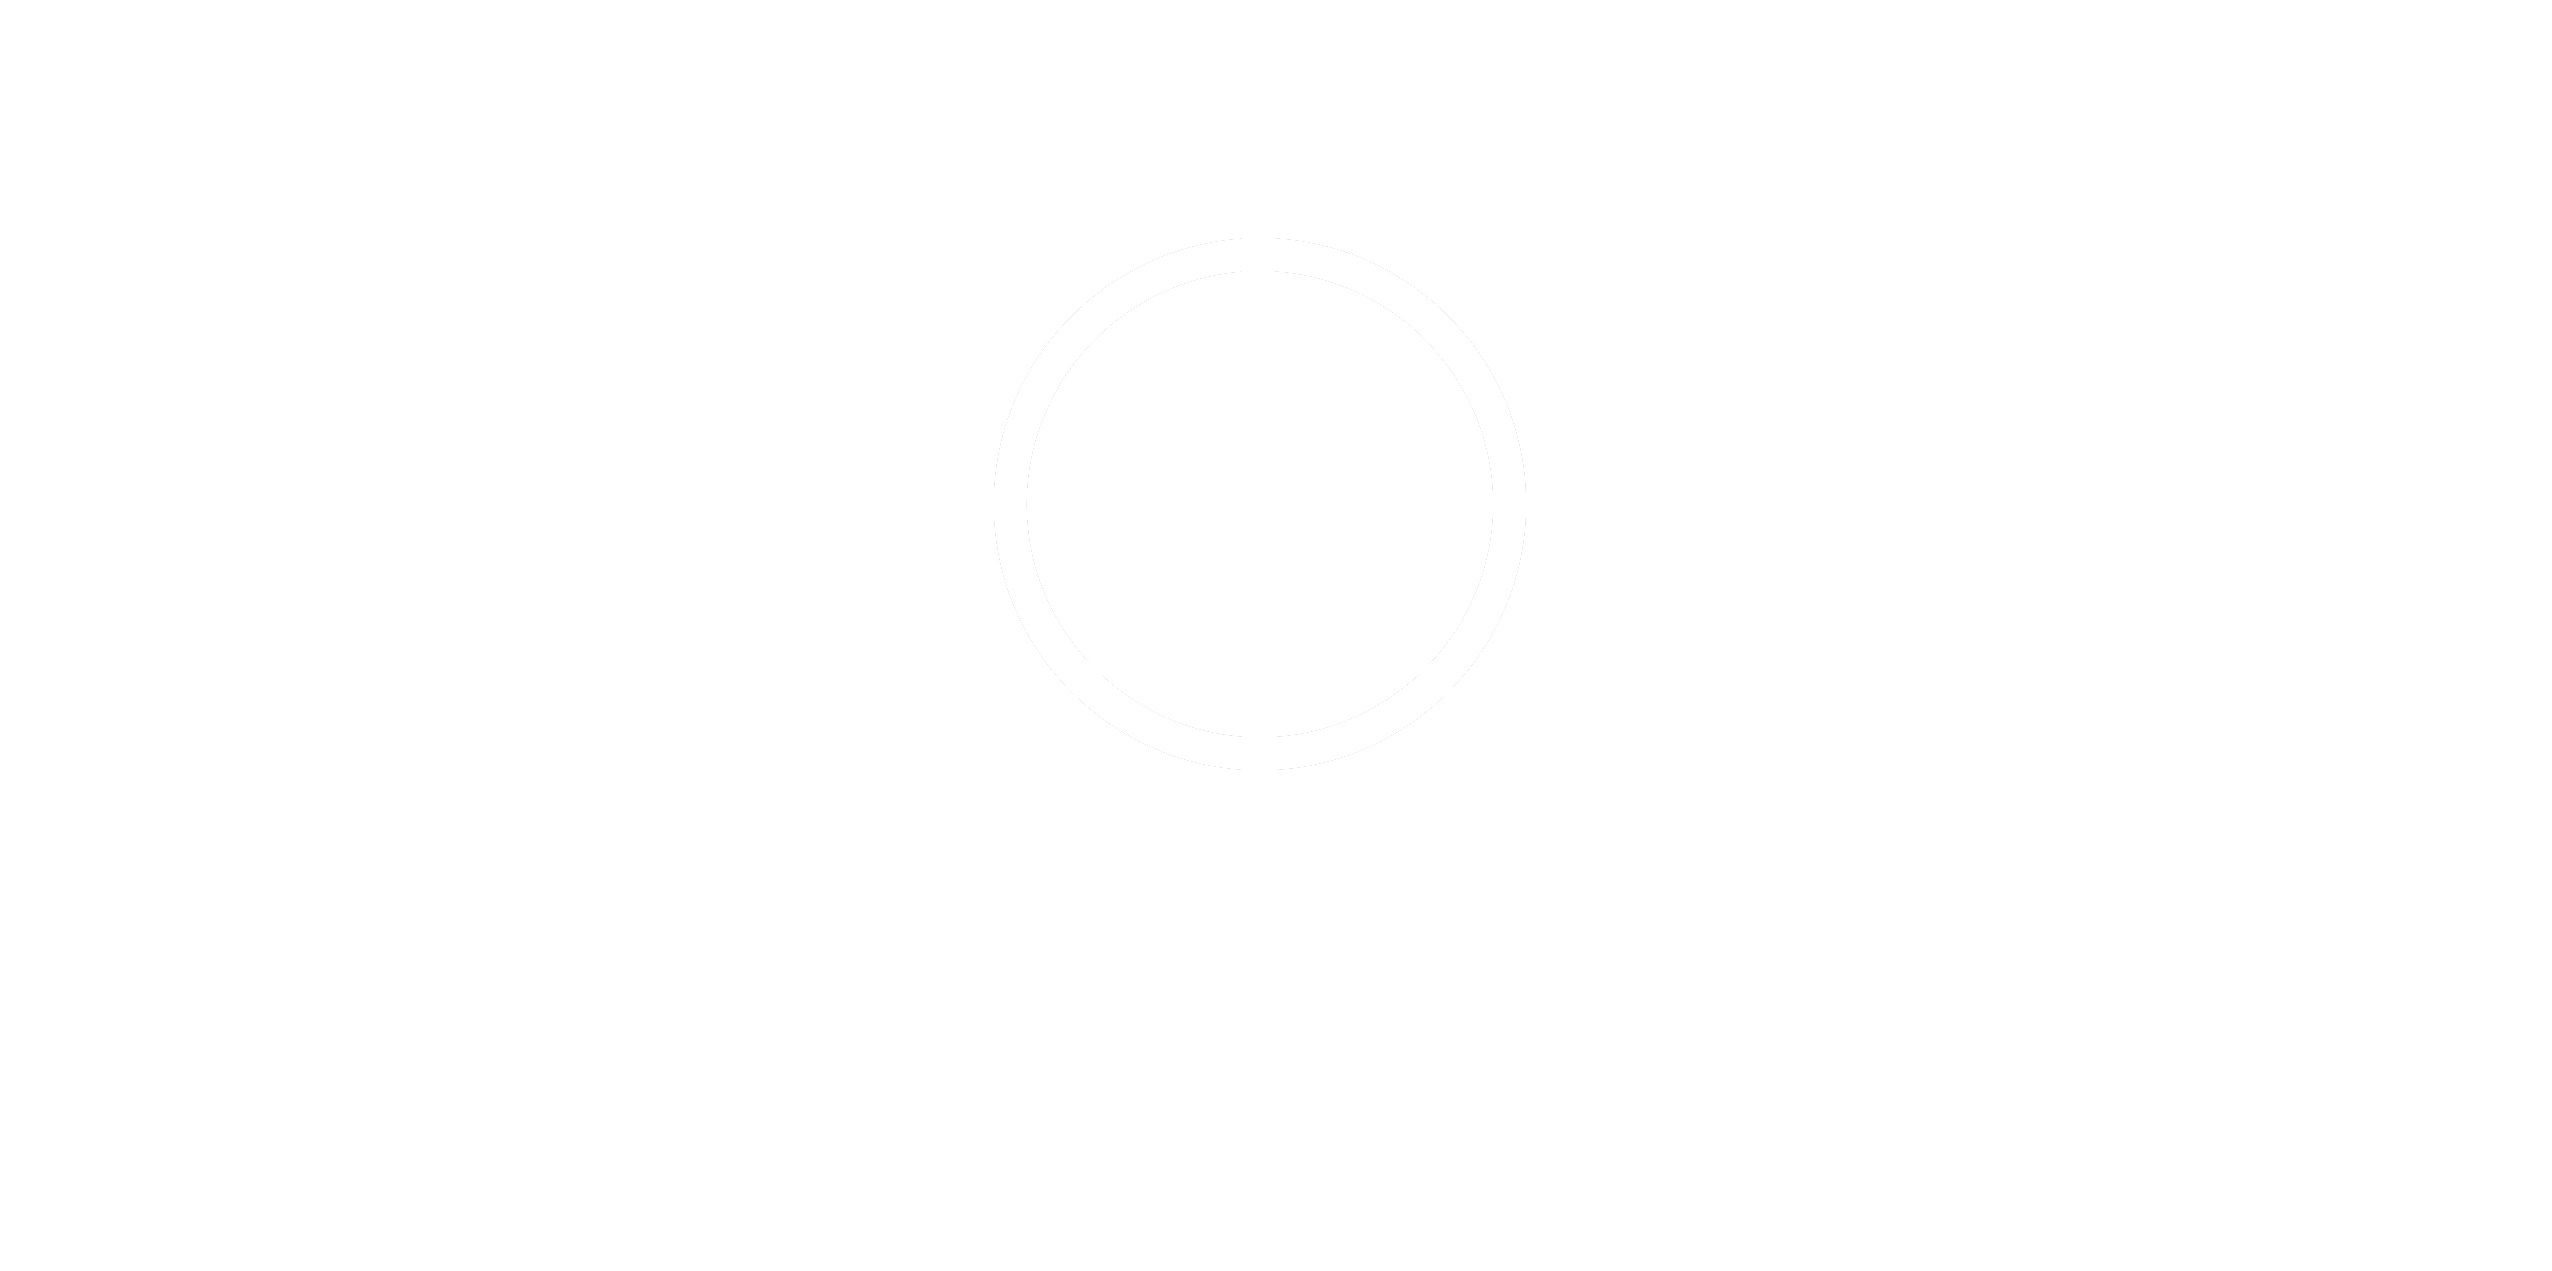 Kop Media